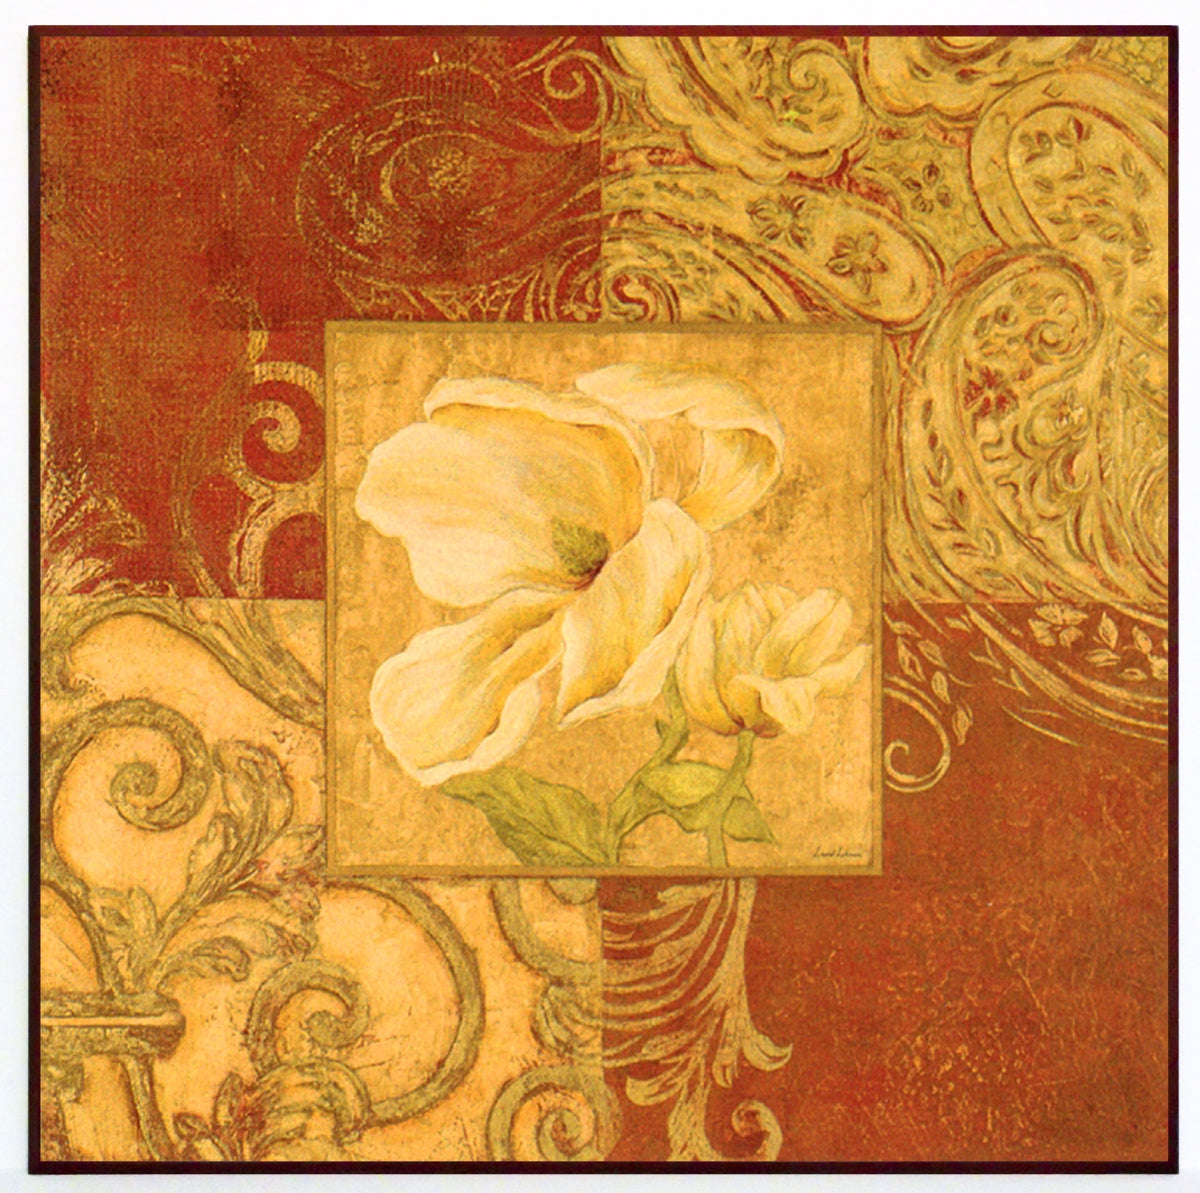 Obraz - Kwiat magnolii, kompozycja z ornamentami - reprodukcja na płycie A5336 71x71 cm - Obrazy Reprodukcje Ramy | ergopaul.pl